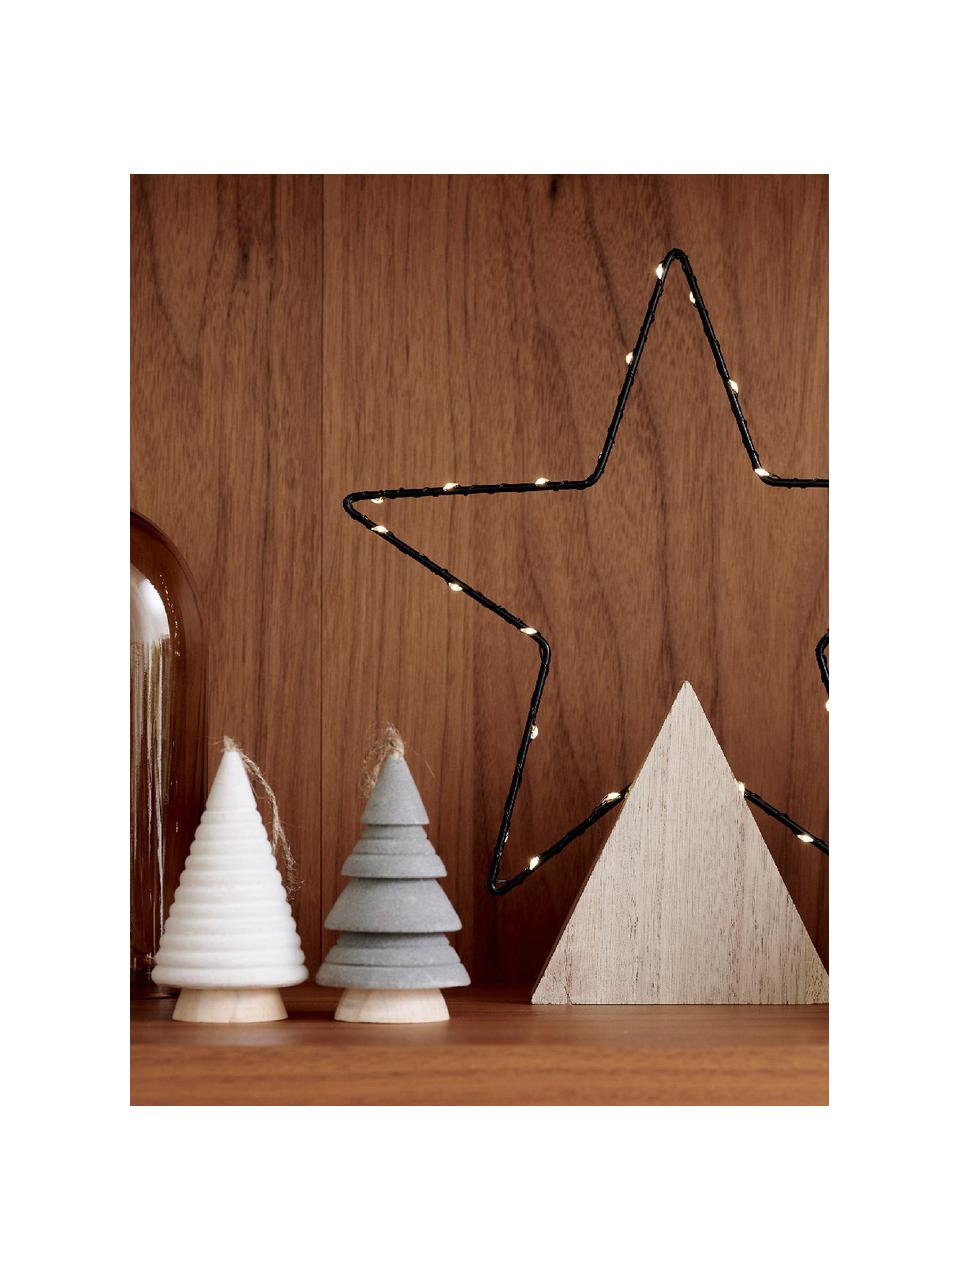 Sada dekorací ve tvaru vánočních stromečků Maggie, 3 díly, Dřevovláknitá deska střední hustoty (MDF), Dřevo, šedá, hnědá, krémově bílá, Ø 6 cm, V 10 cm